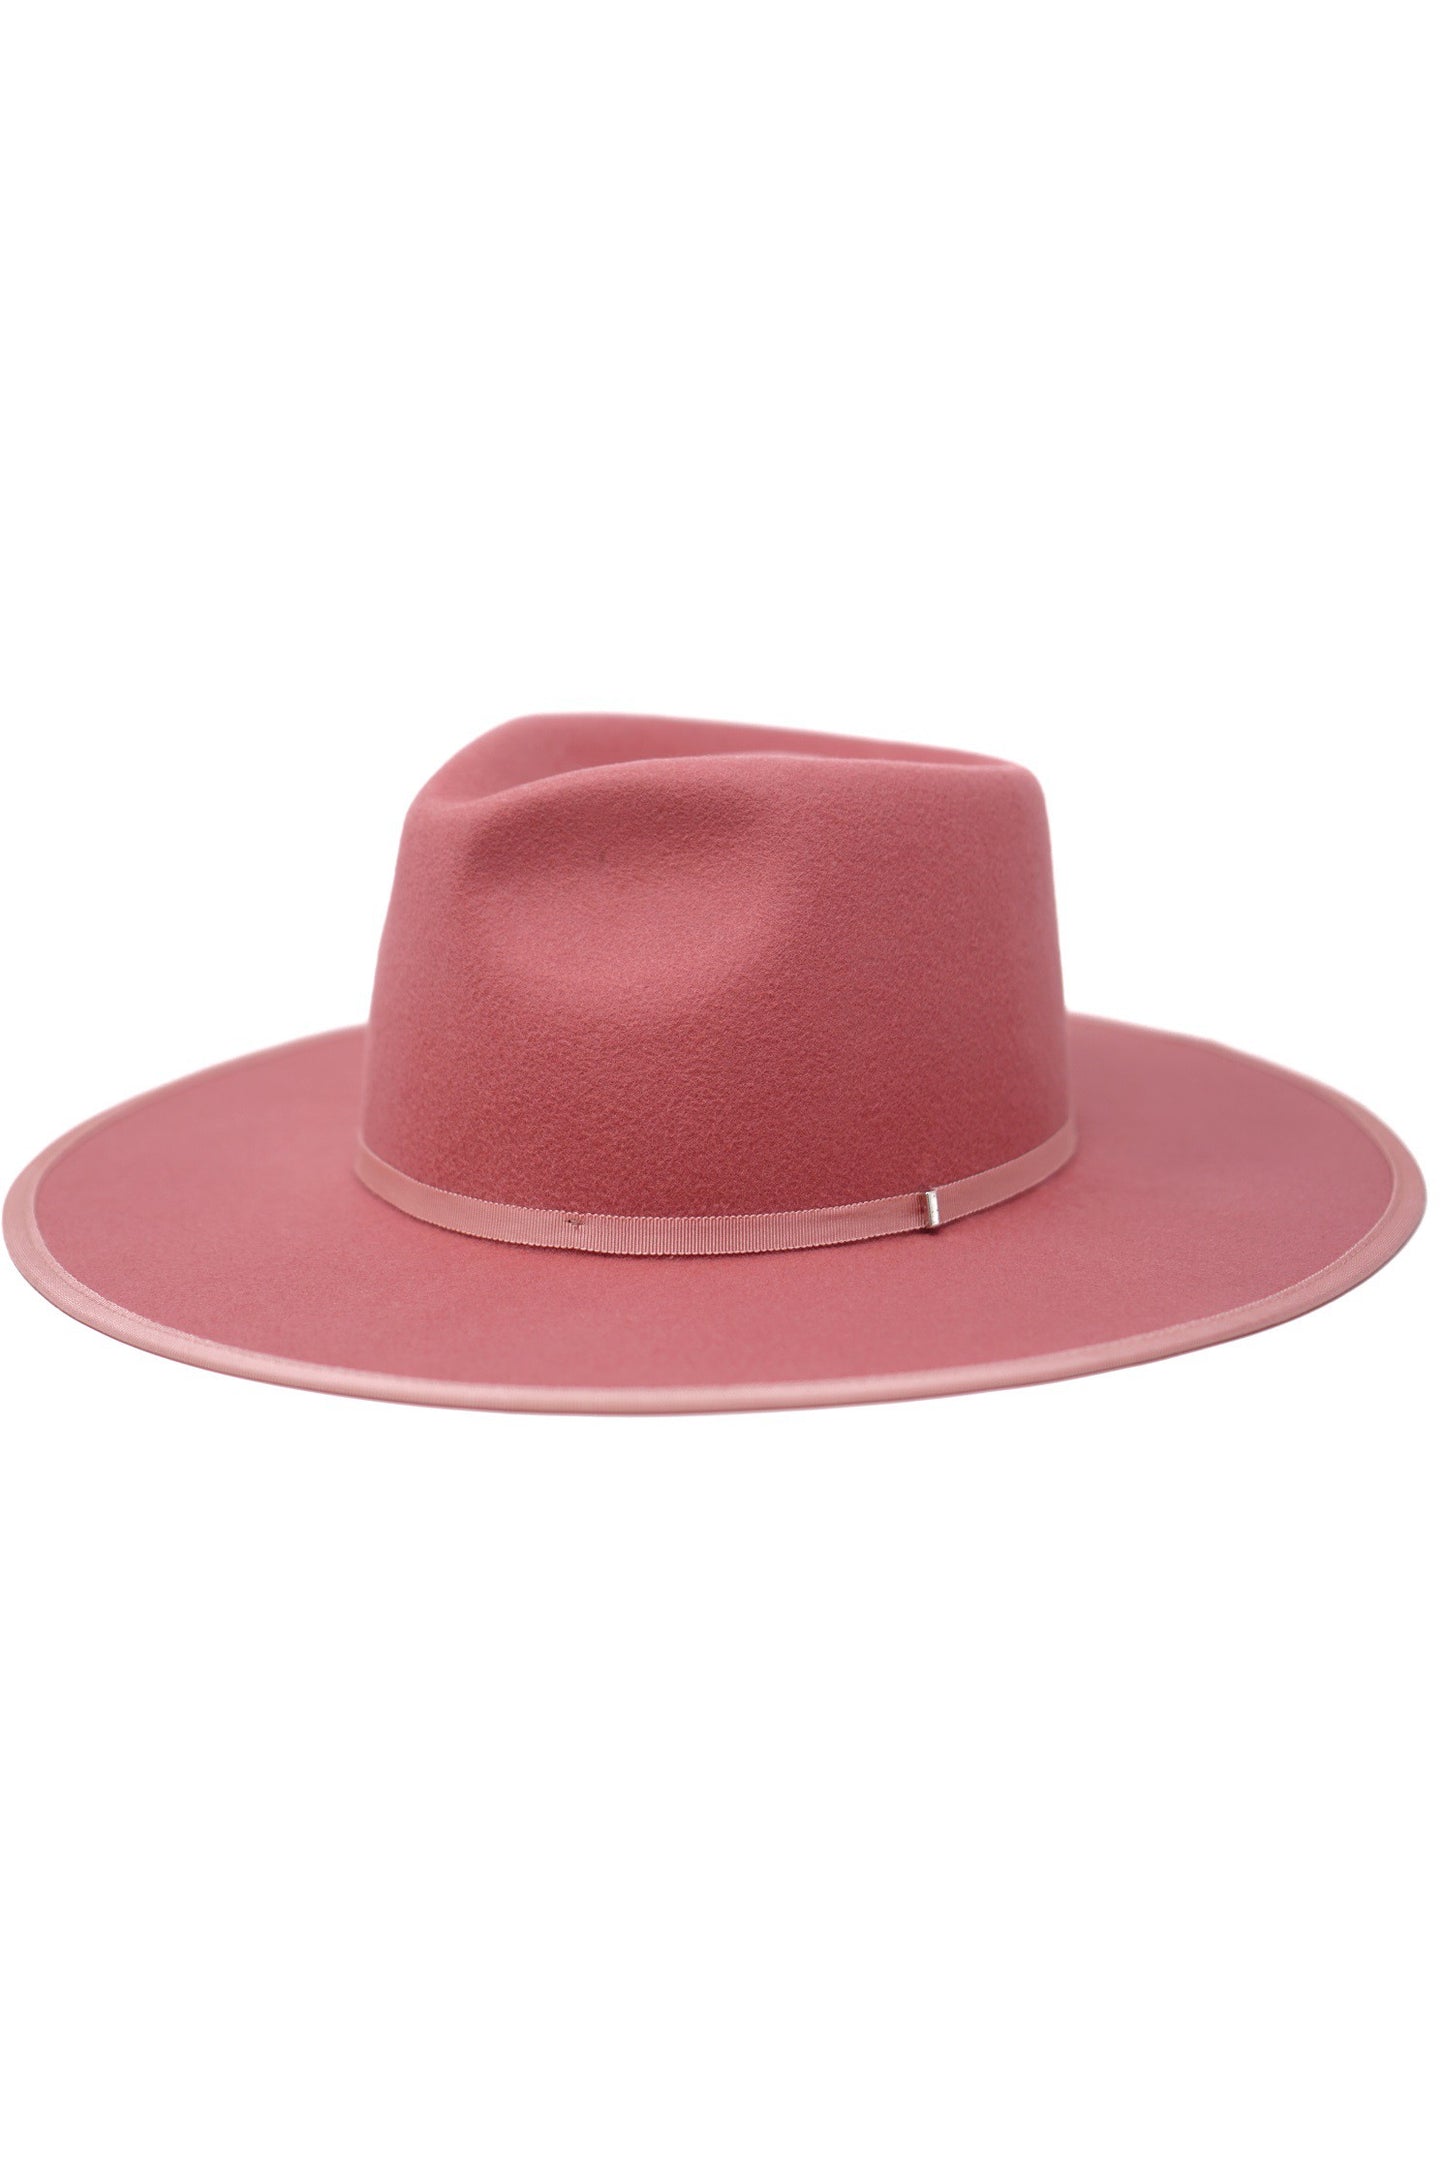 The Billie Blush Rancher Hat